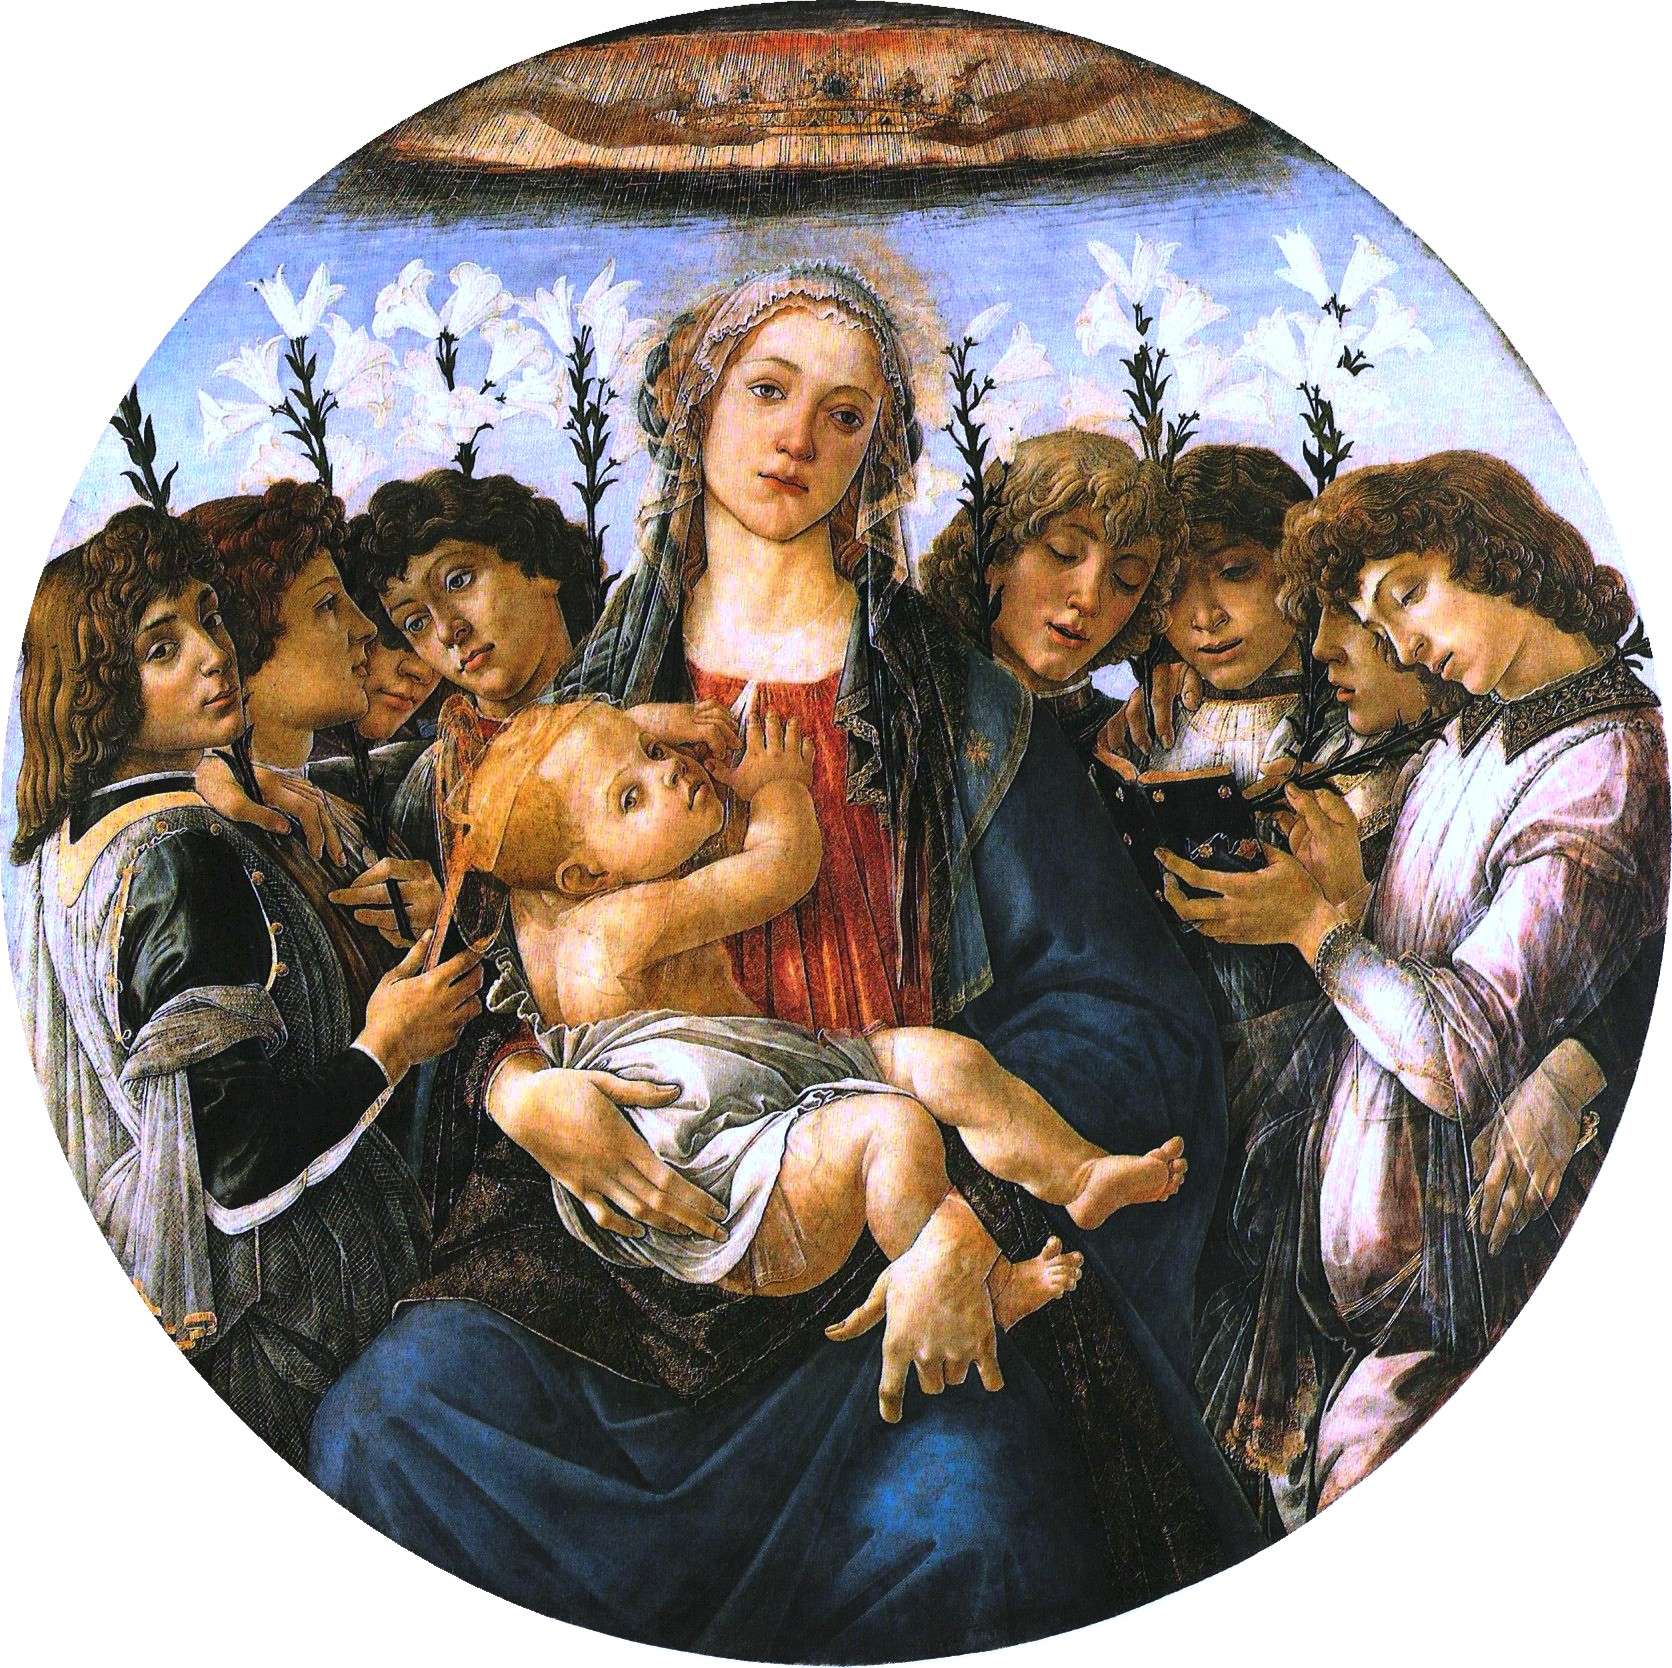 Σάντρο Μποττιτσέλλι. Η Θεοτόκος και οκτώ άγγελοι με κρίνα, περ. 1478